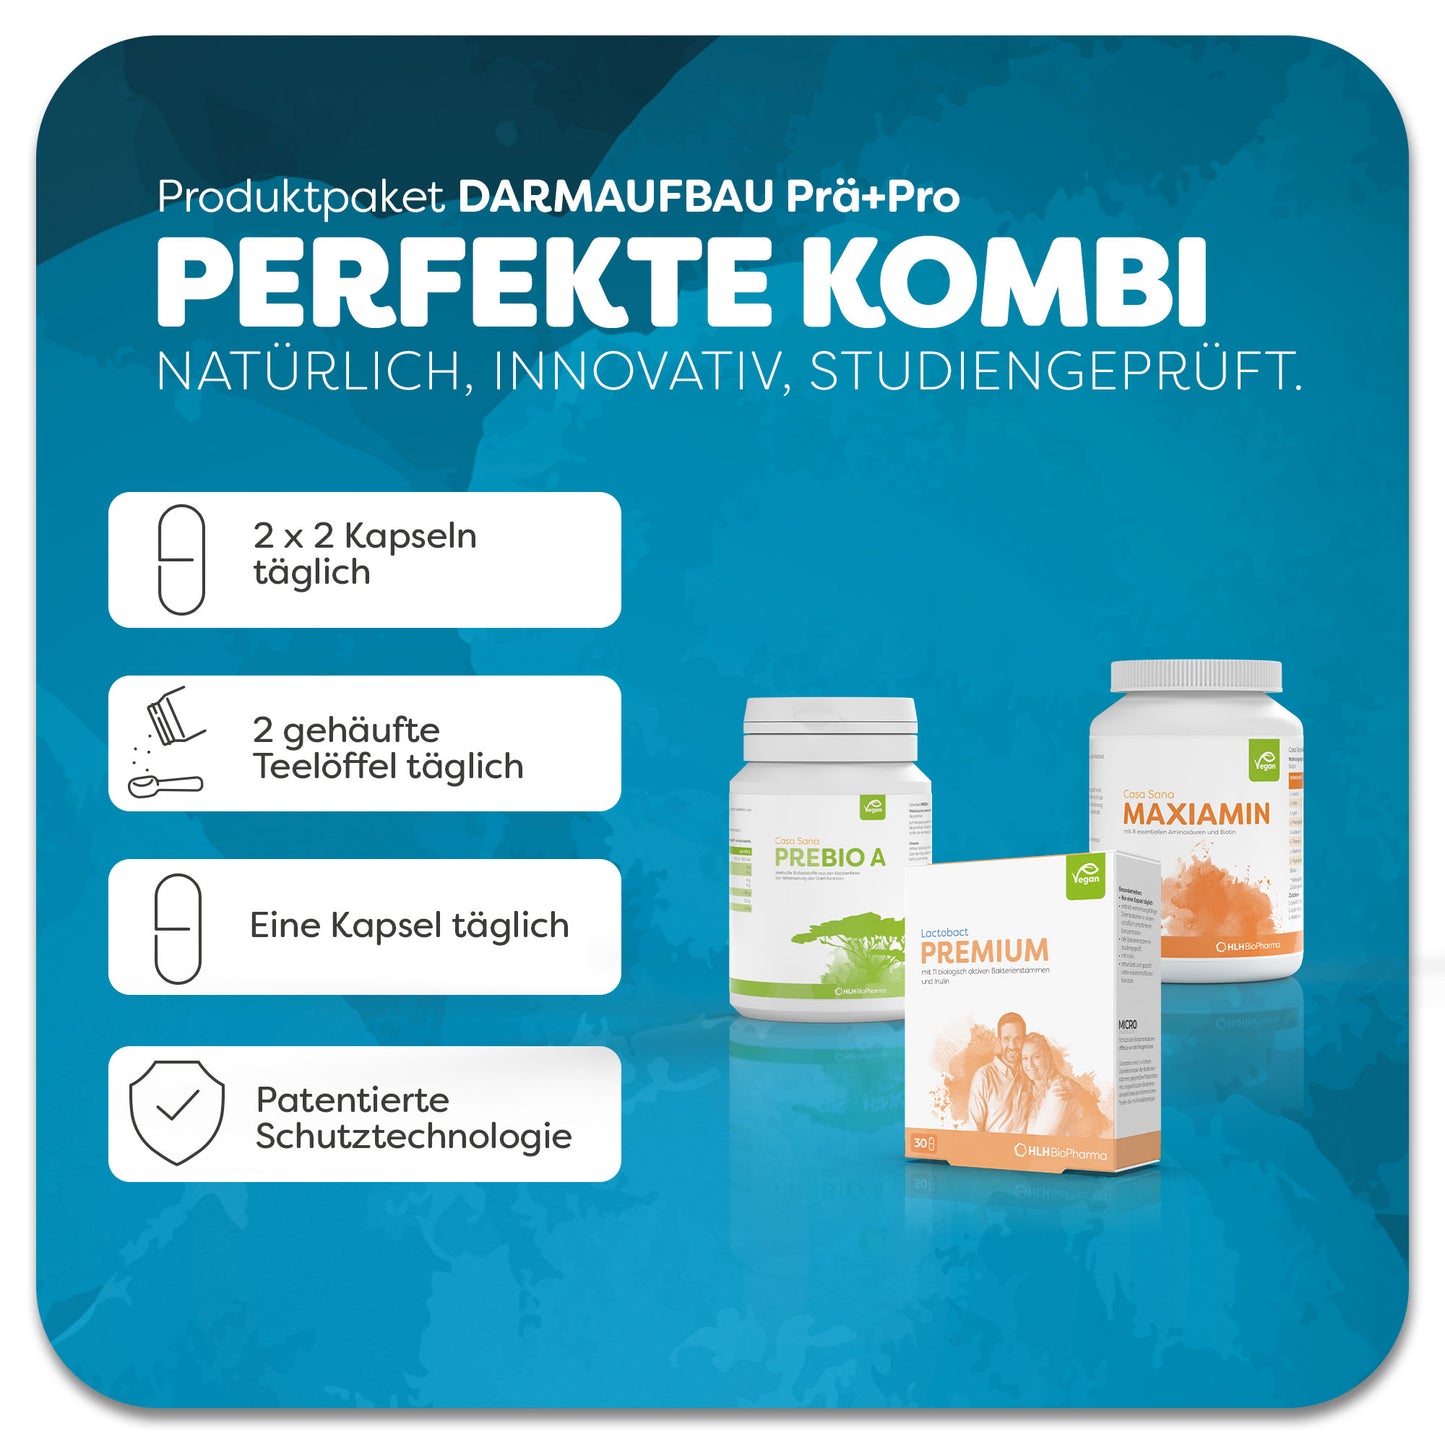 Informationsblatt mit Einnahmeempfehlung zum Produktpaket Darmaufbau Prä+Pro